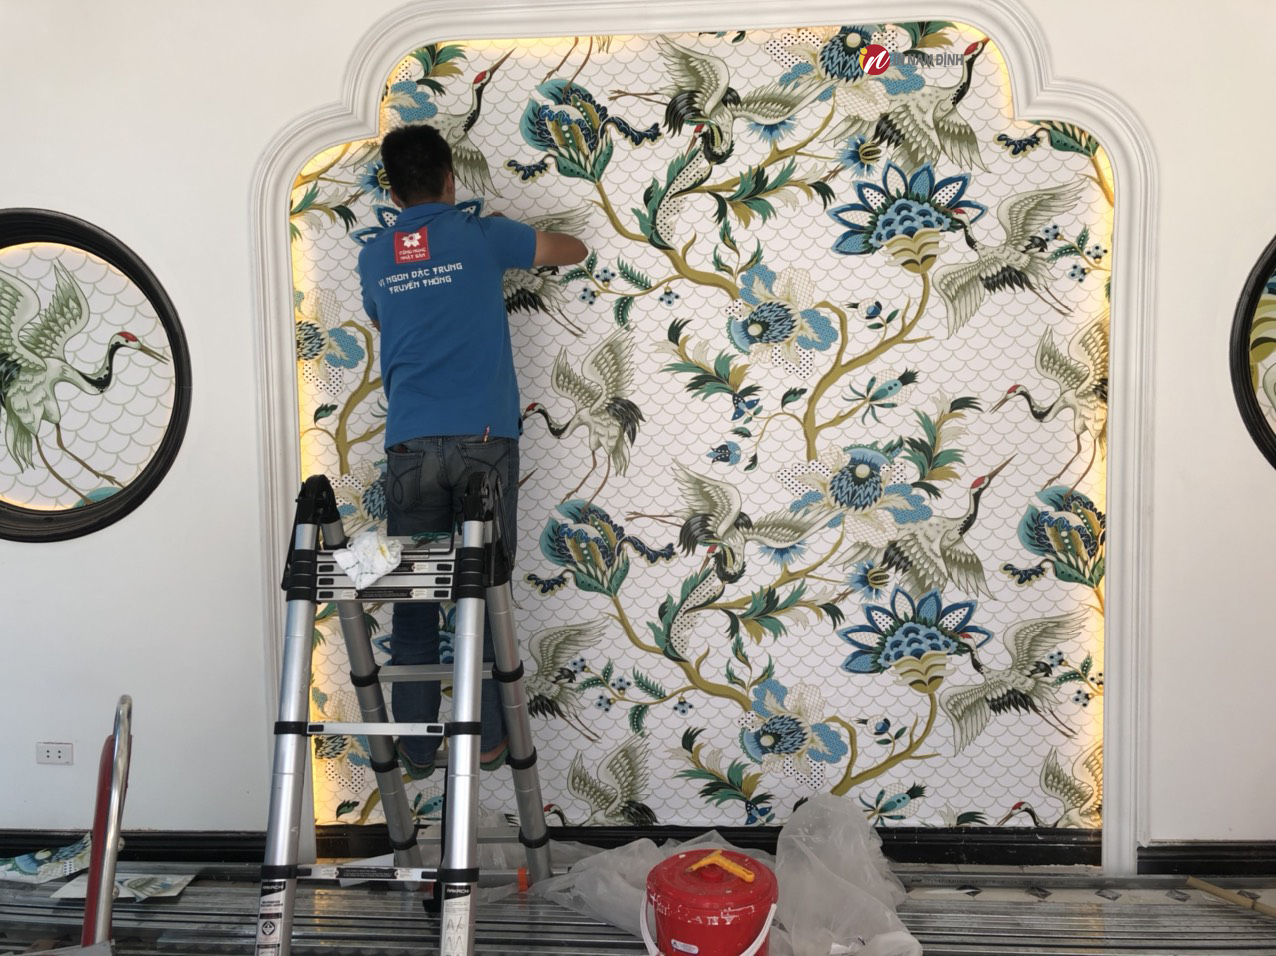 Thi công tranh dán tường quán ăn với công nghệ in và chất liệu siêu bền đẹp chỉ có ở tranhnamdinh.vn